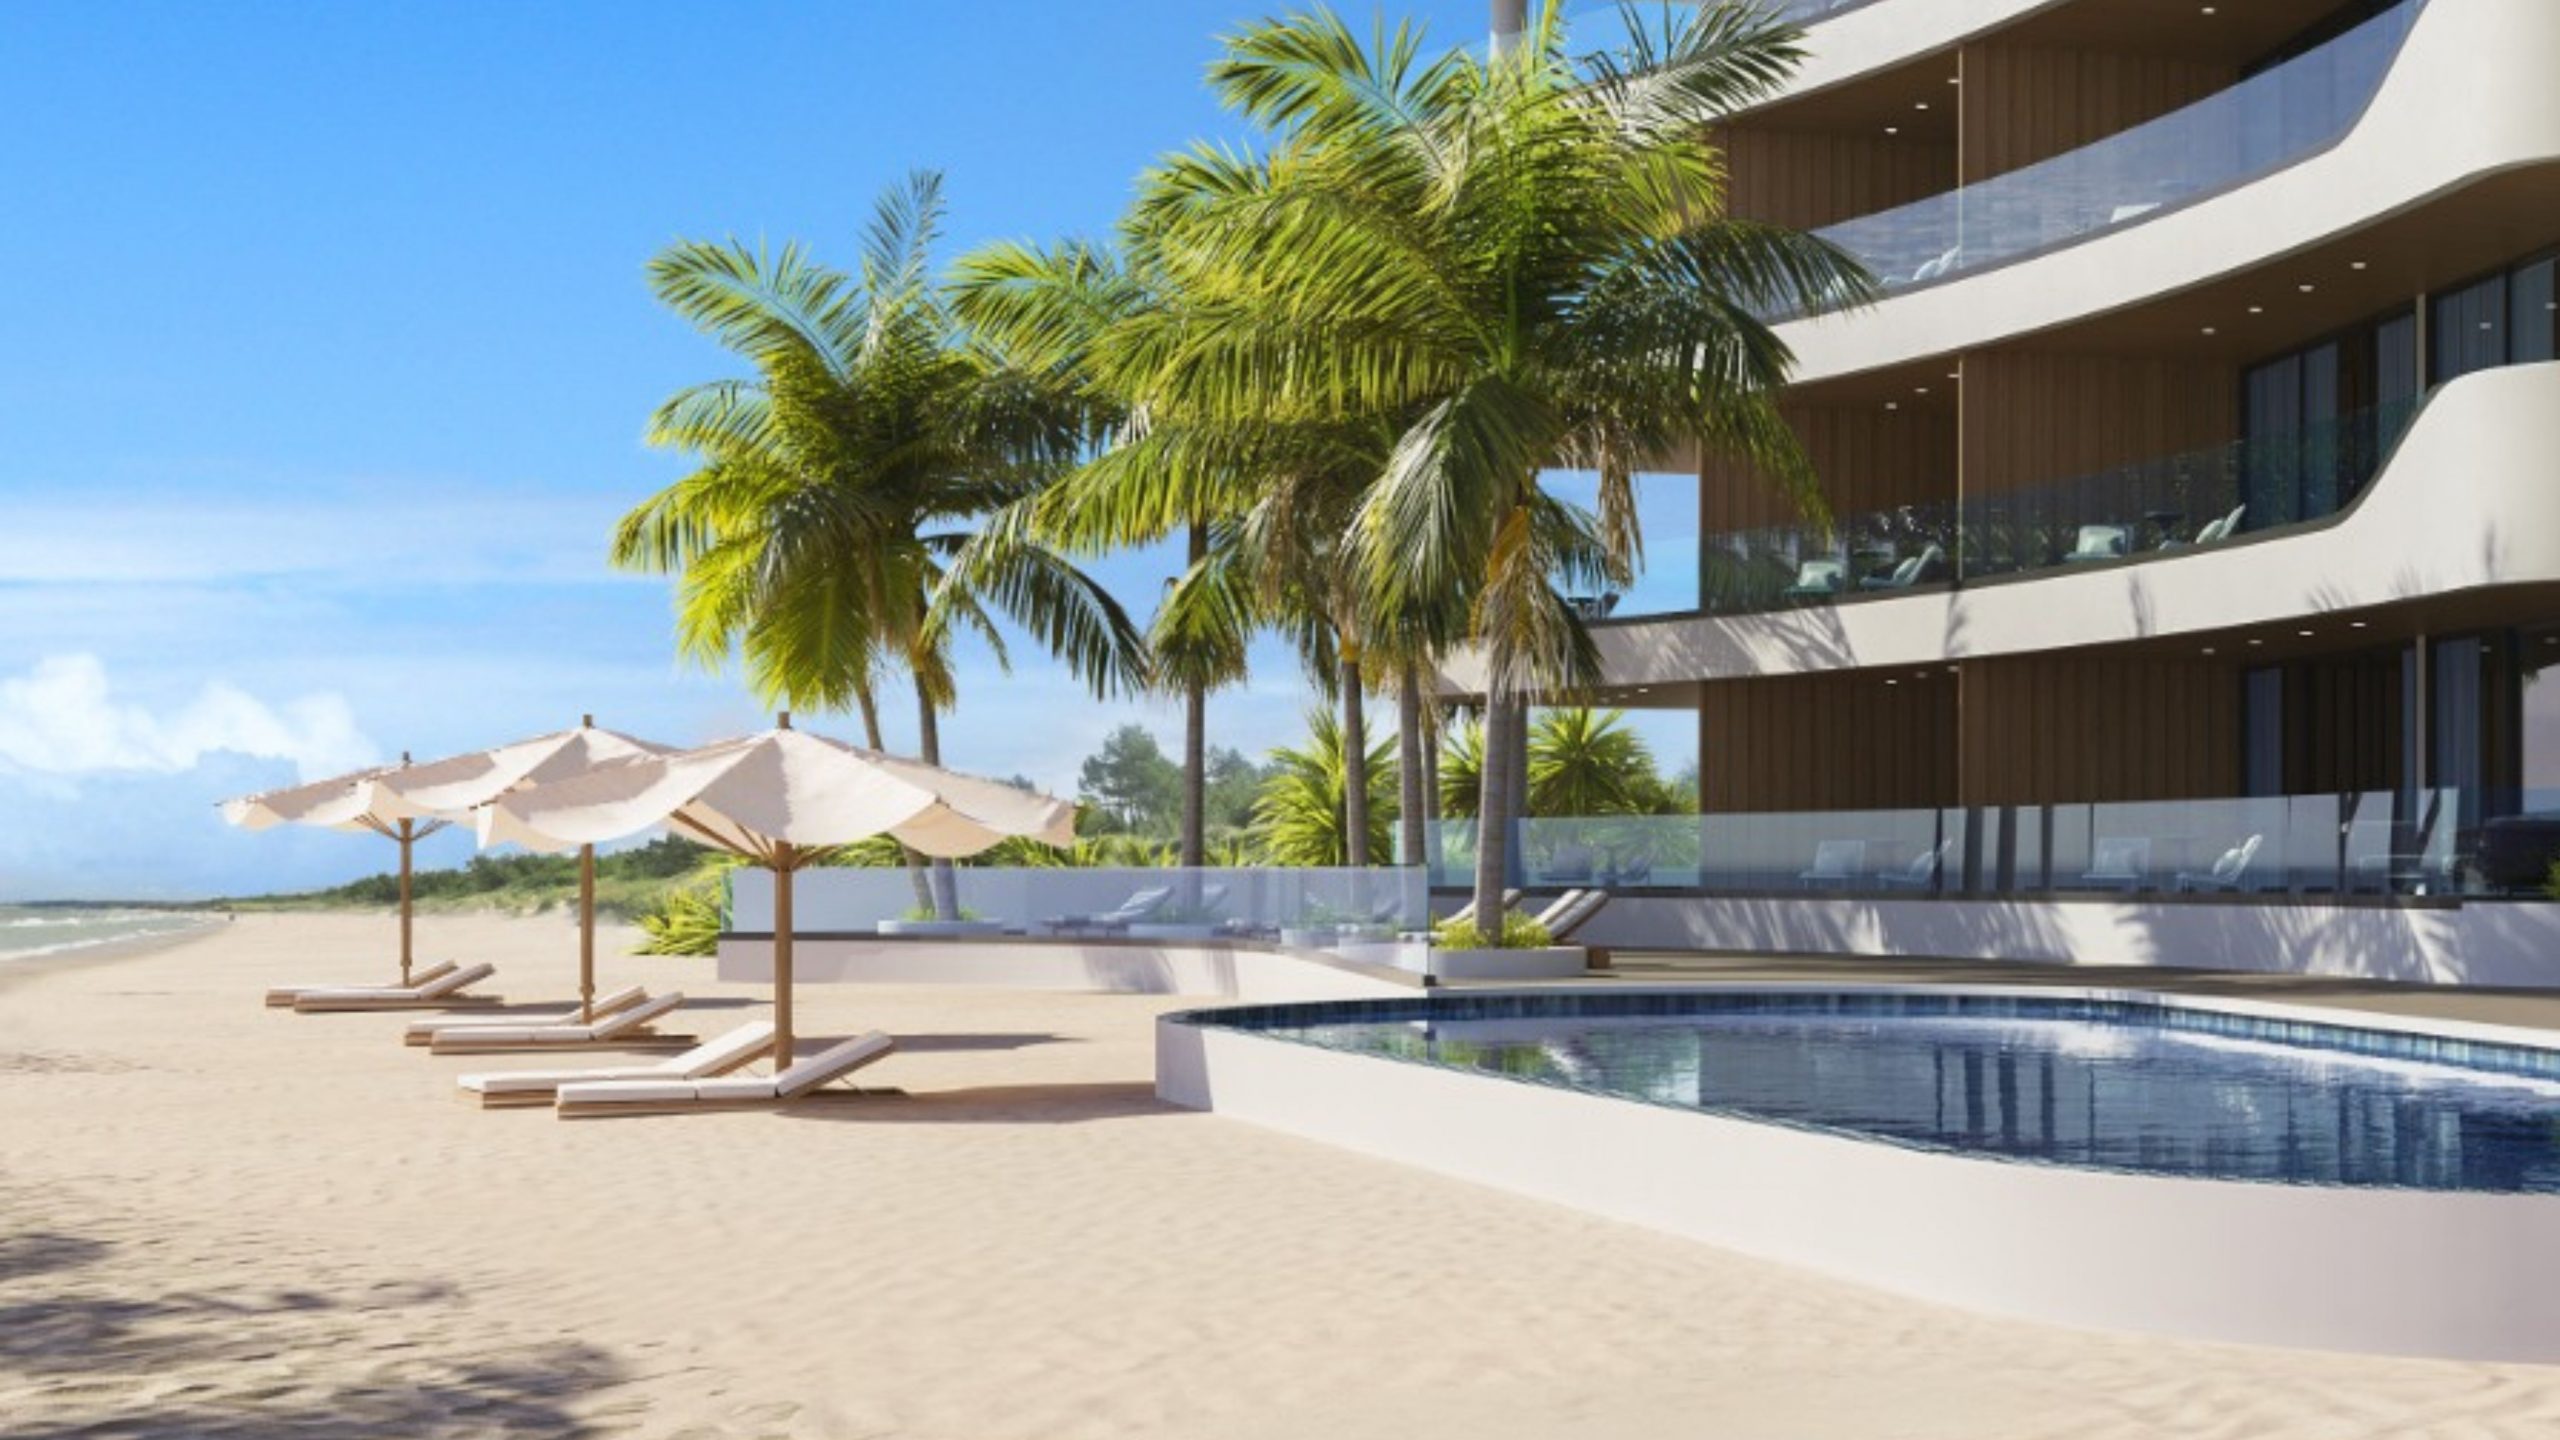 dolce beach residence development and construction caribbean sint maarten